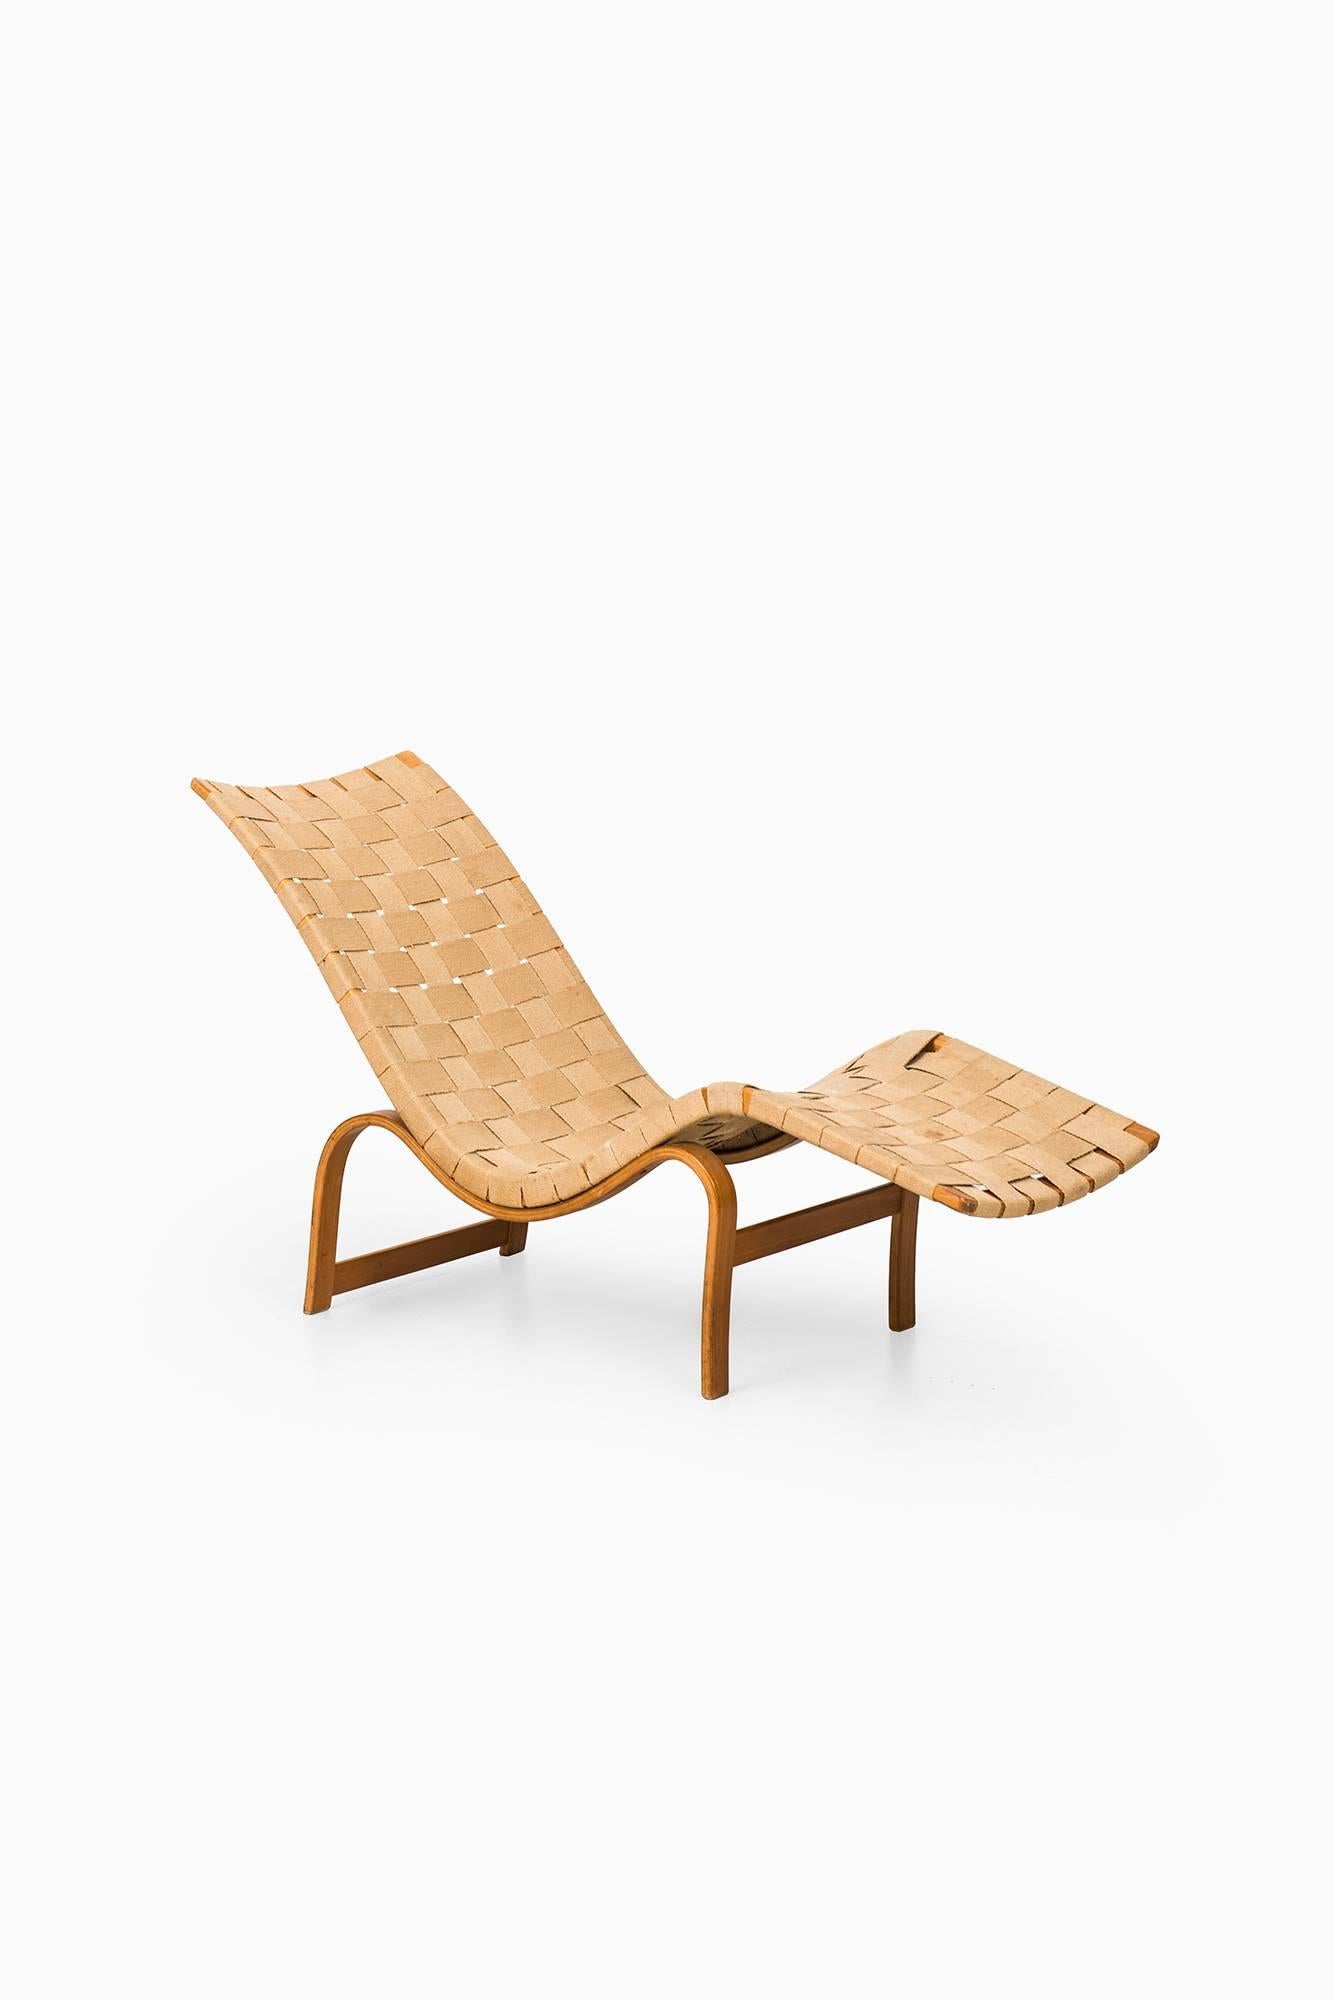 Birch Bruno Mathsson Lounge Chair Model 36 by Karl Mathsson in Sweden